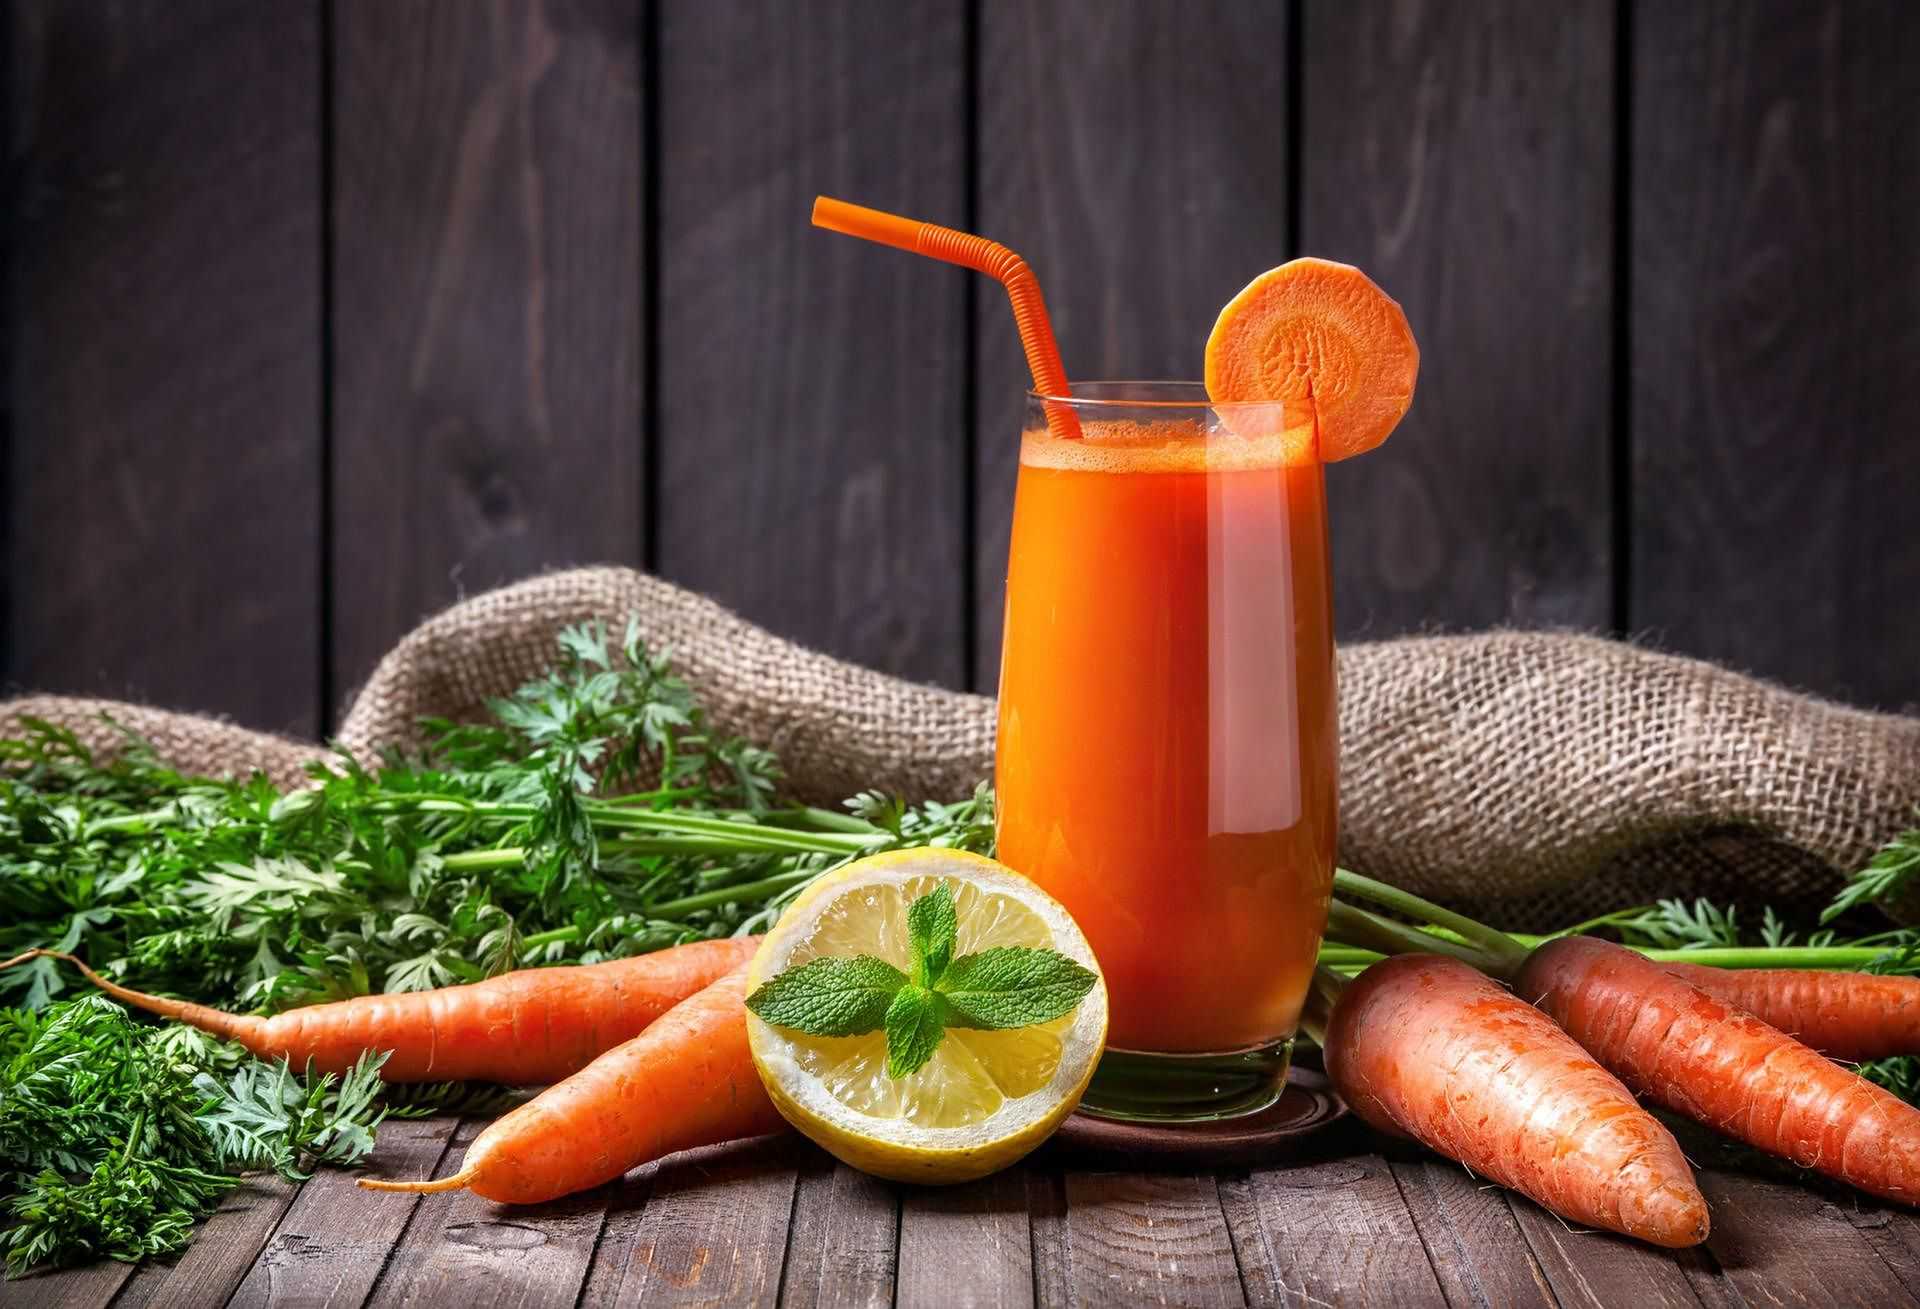 Морковный сок: польза и вред для организма, как пить, противопоказания